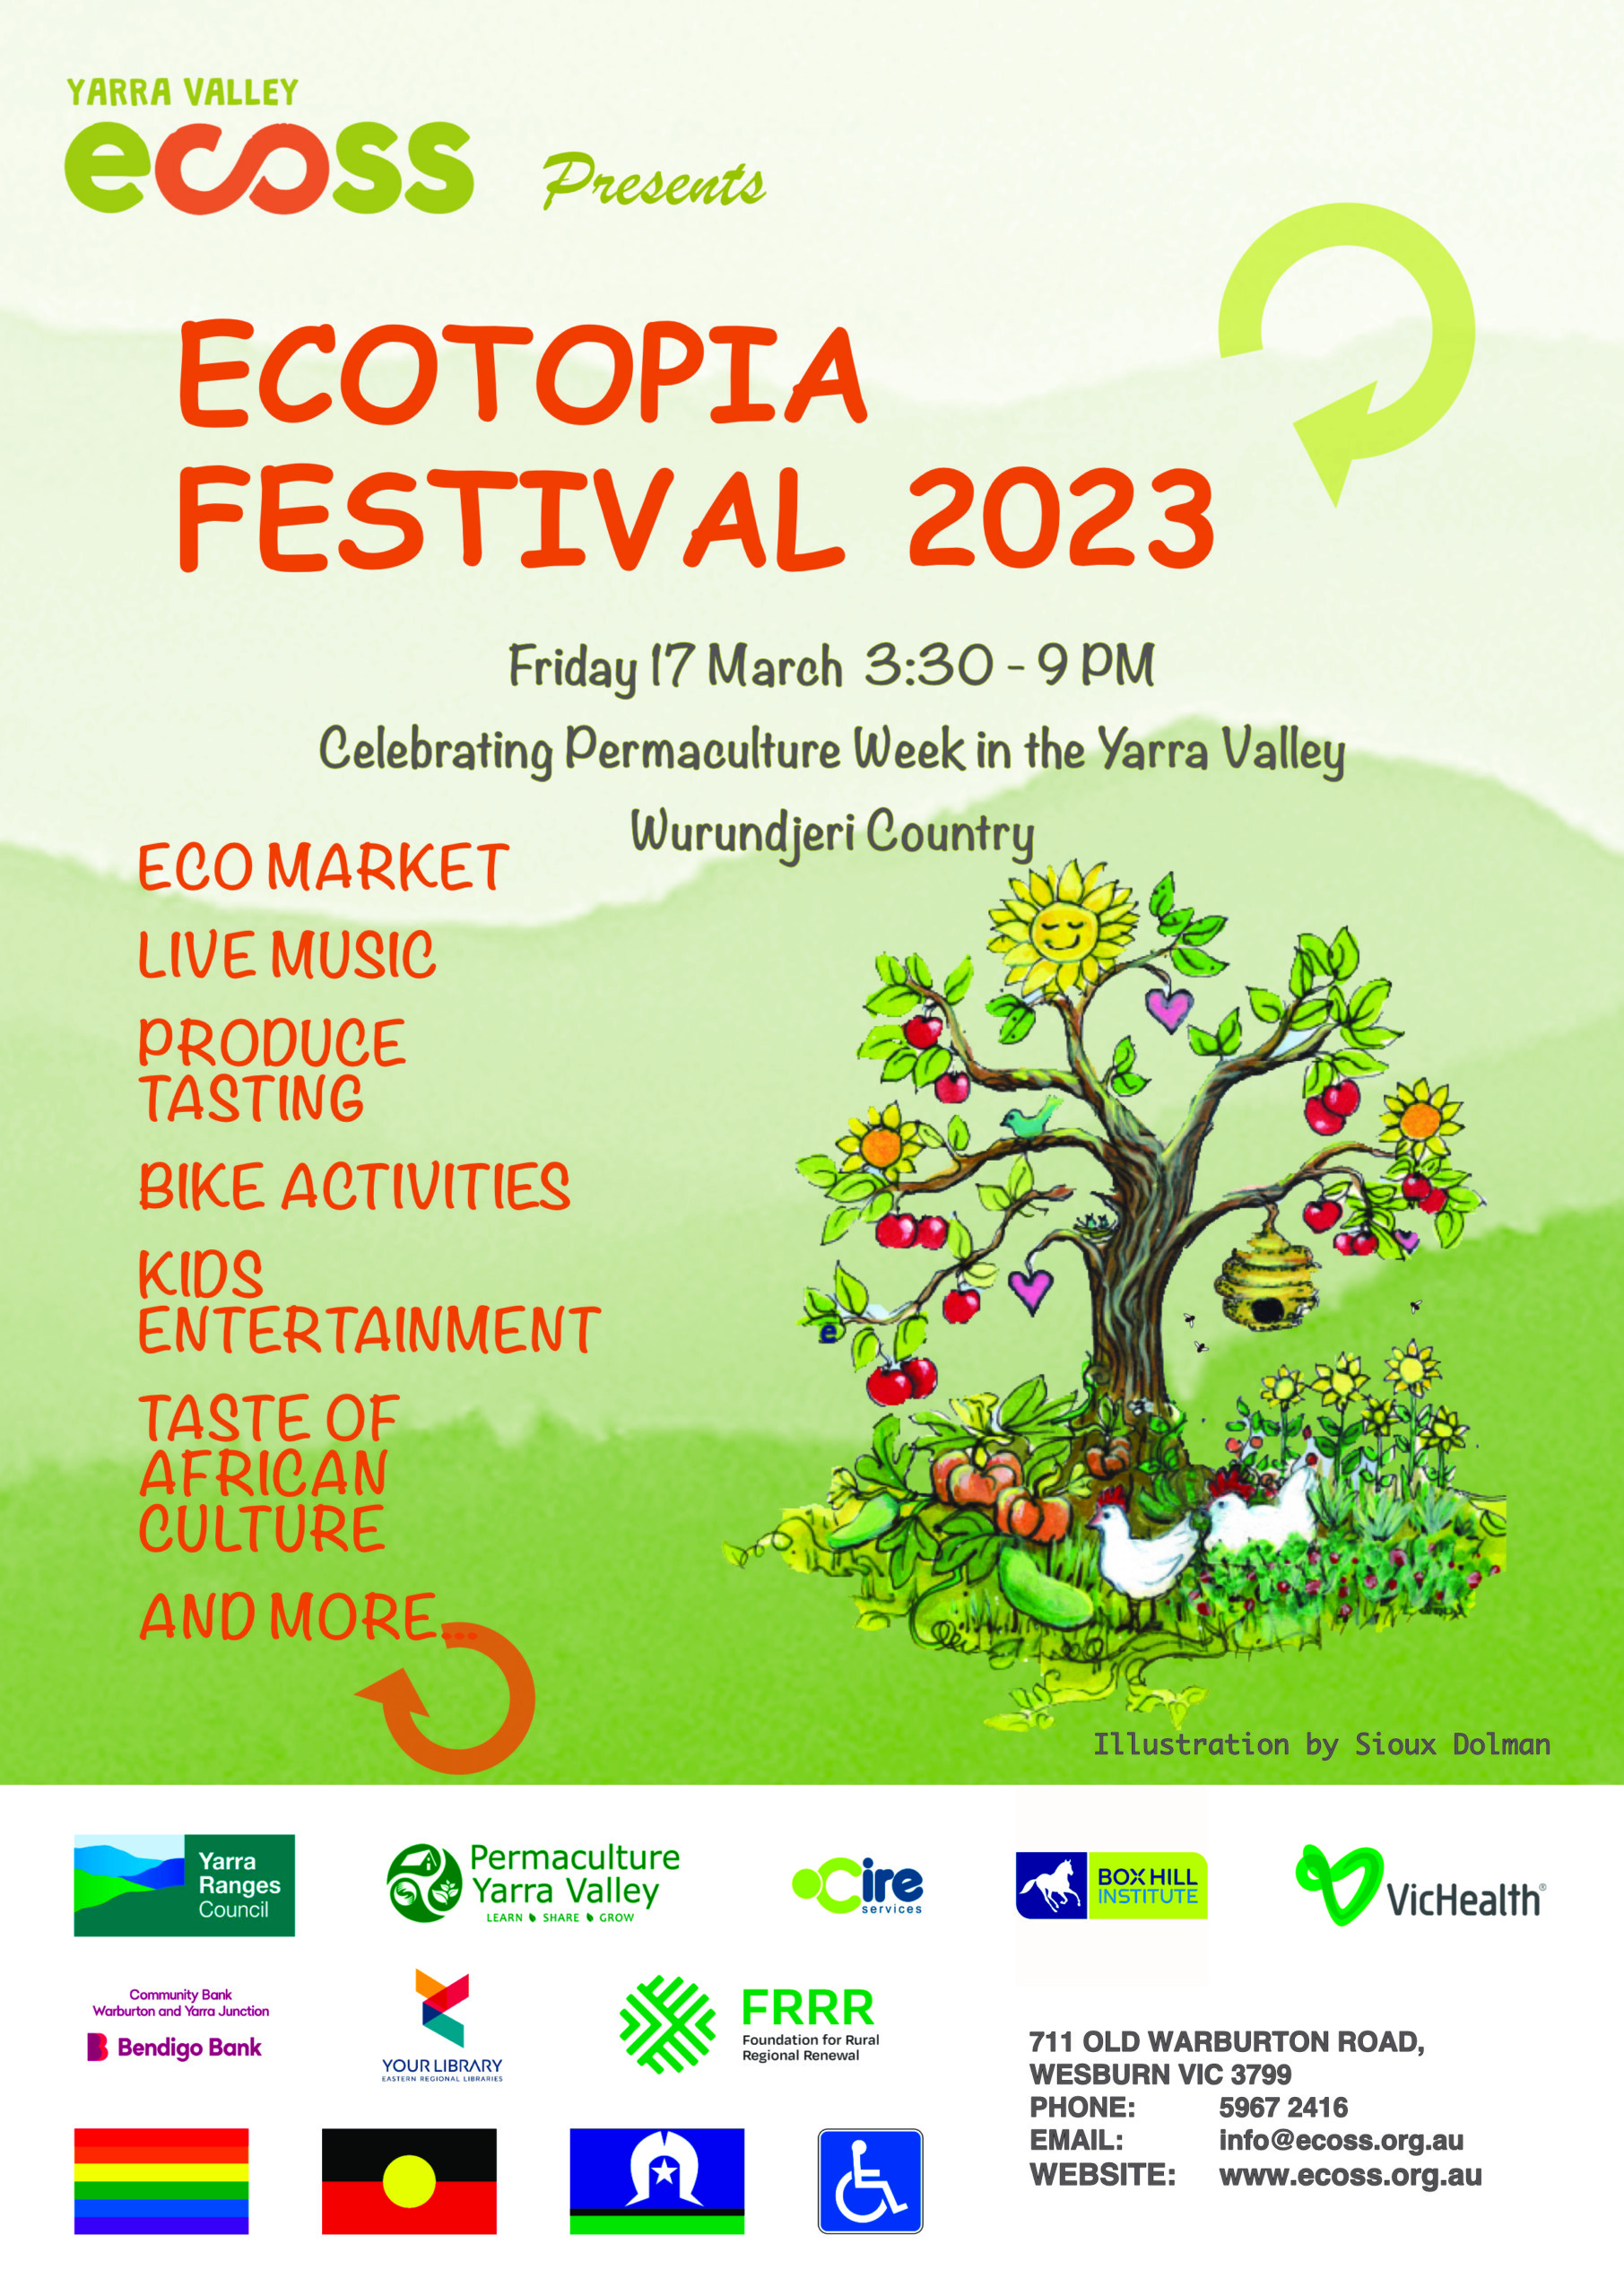 Ecotopia Festival 2023